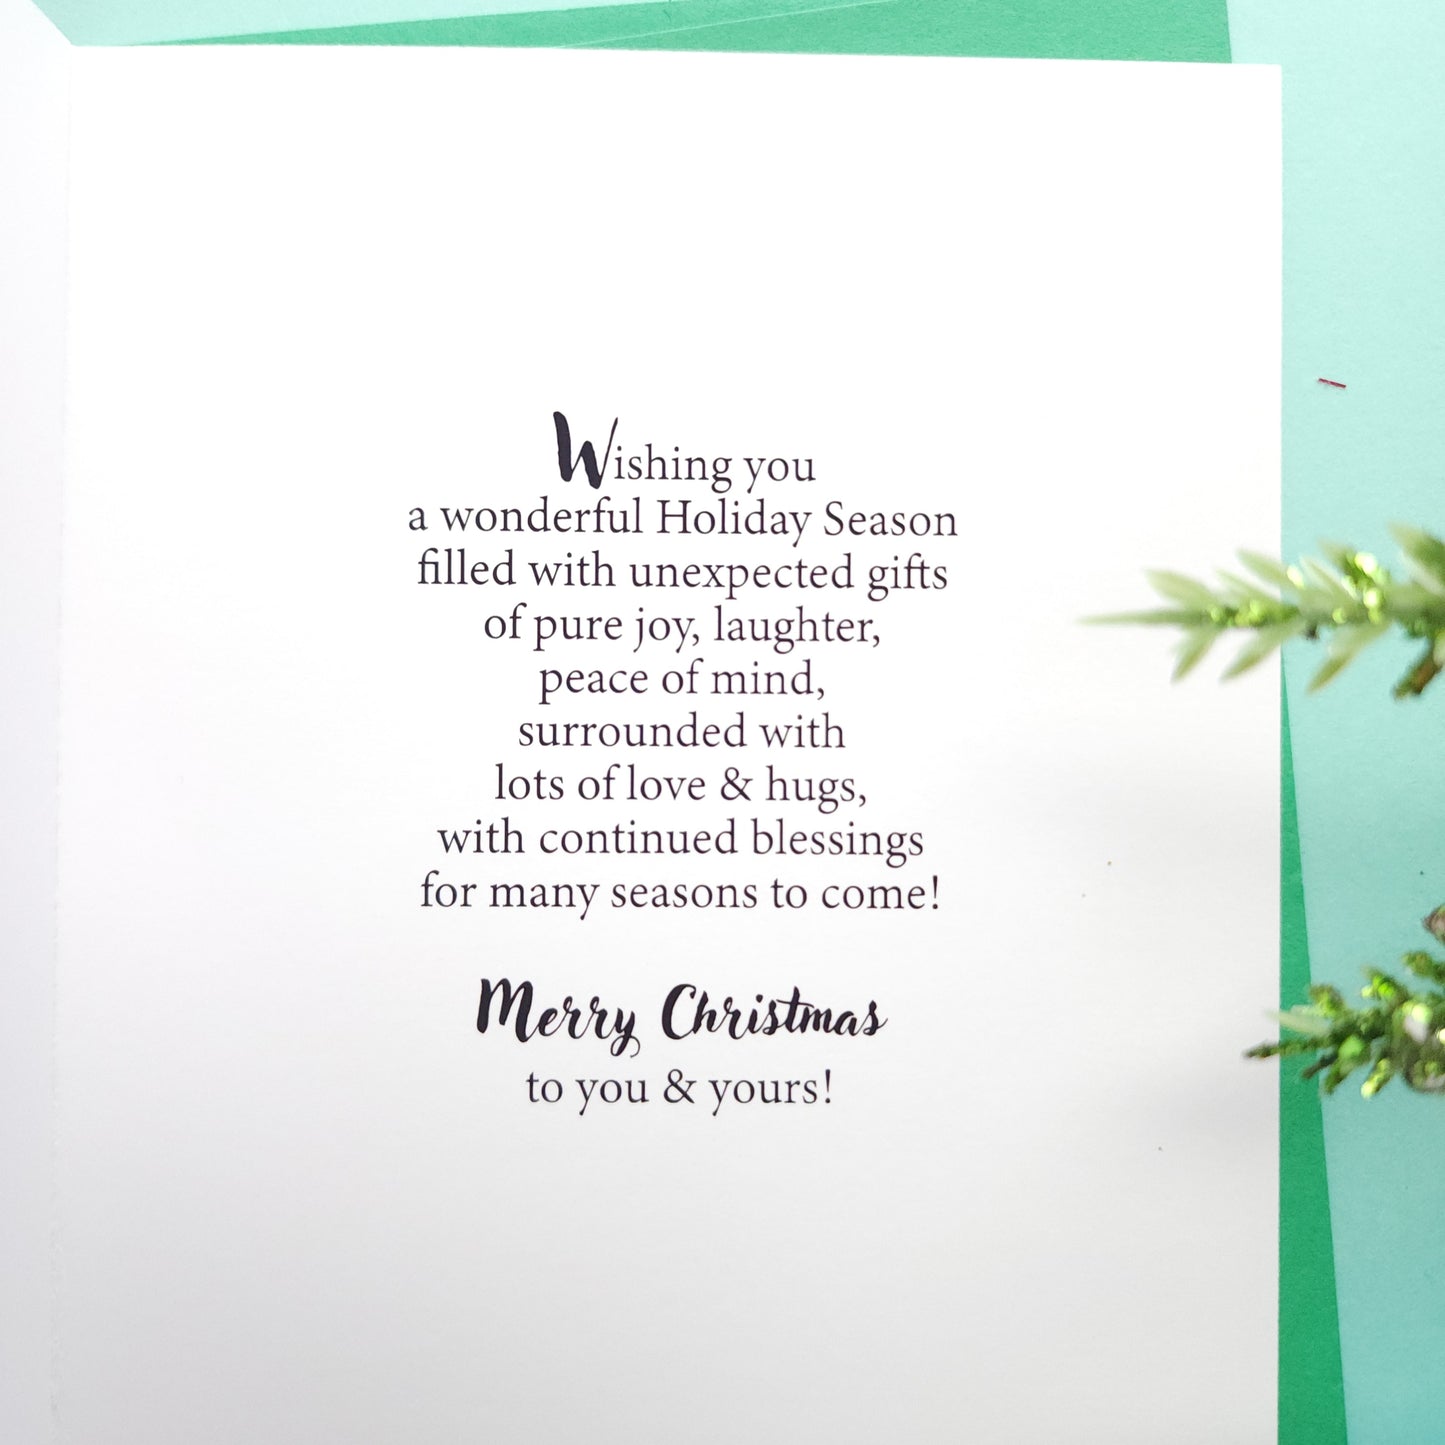 Merry Christmas - Christmas Card